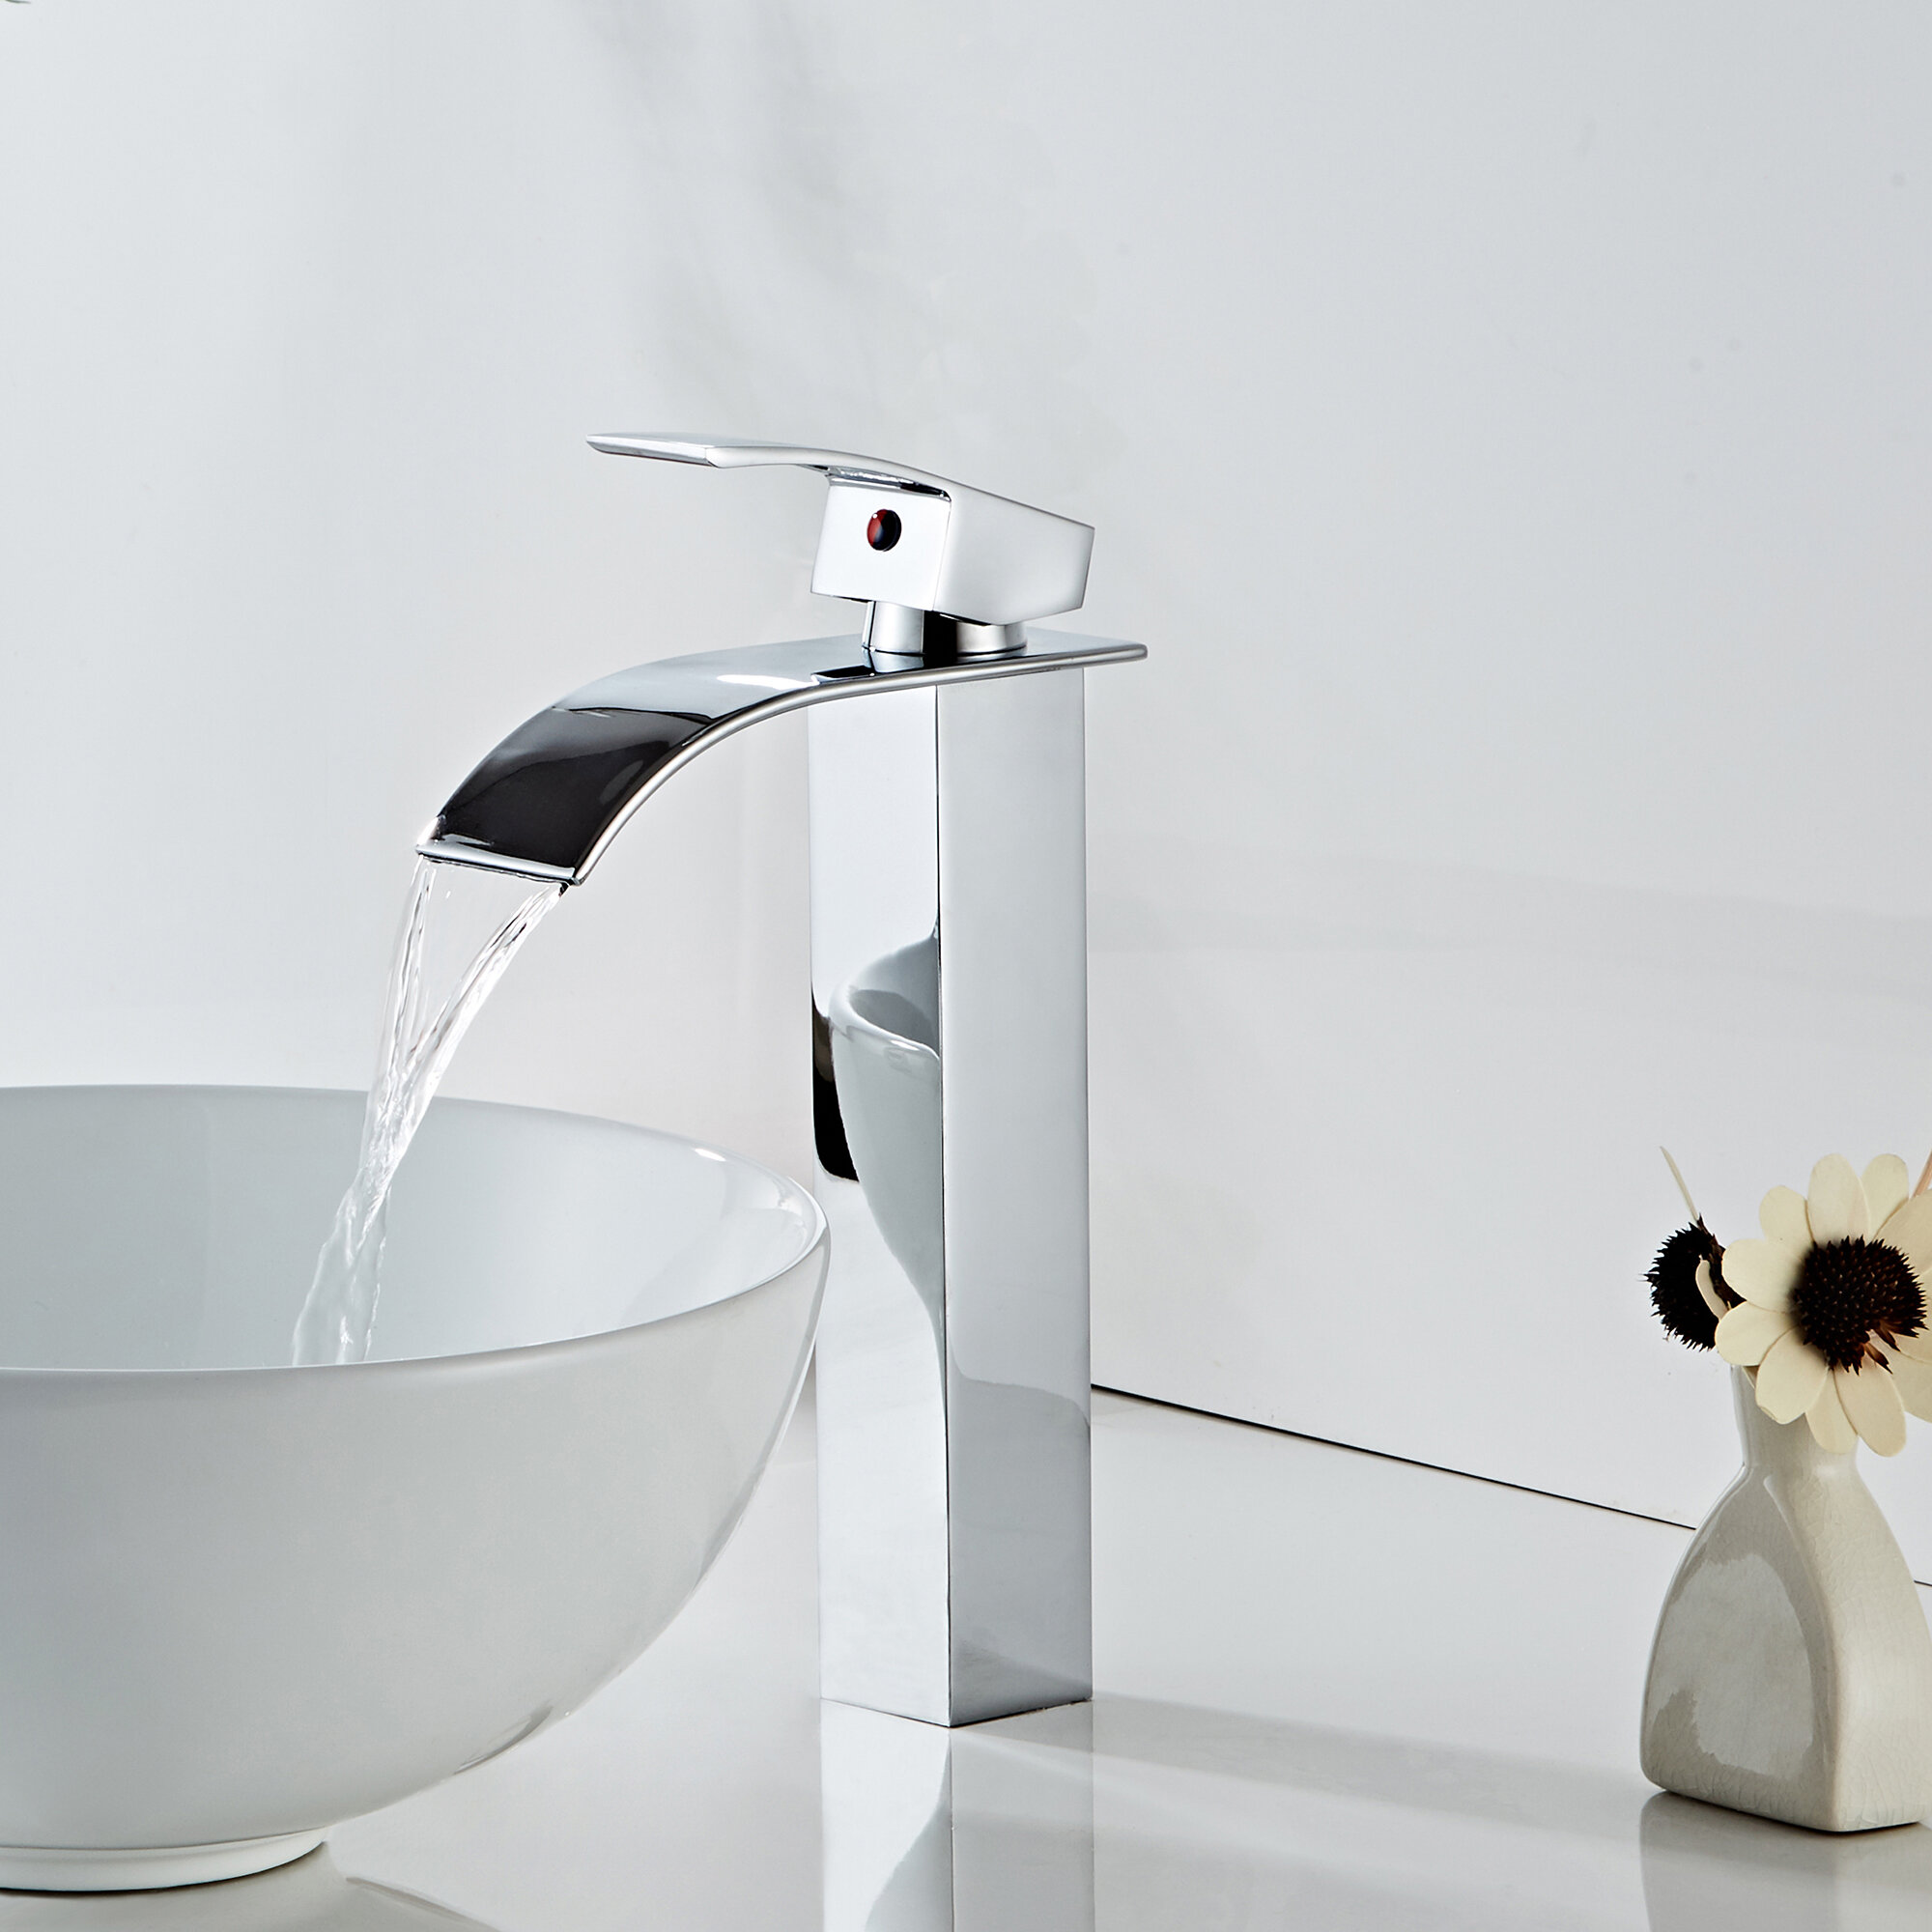 Deervalley Vessel Sink Bathroom Faucet Reviews Wayfair